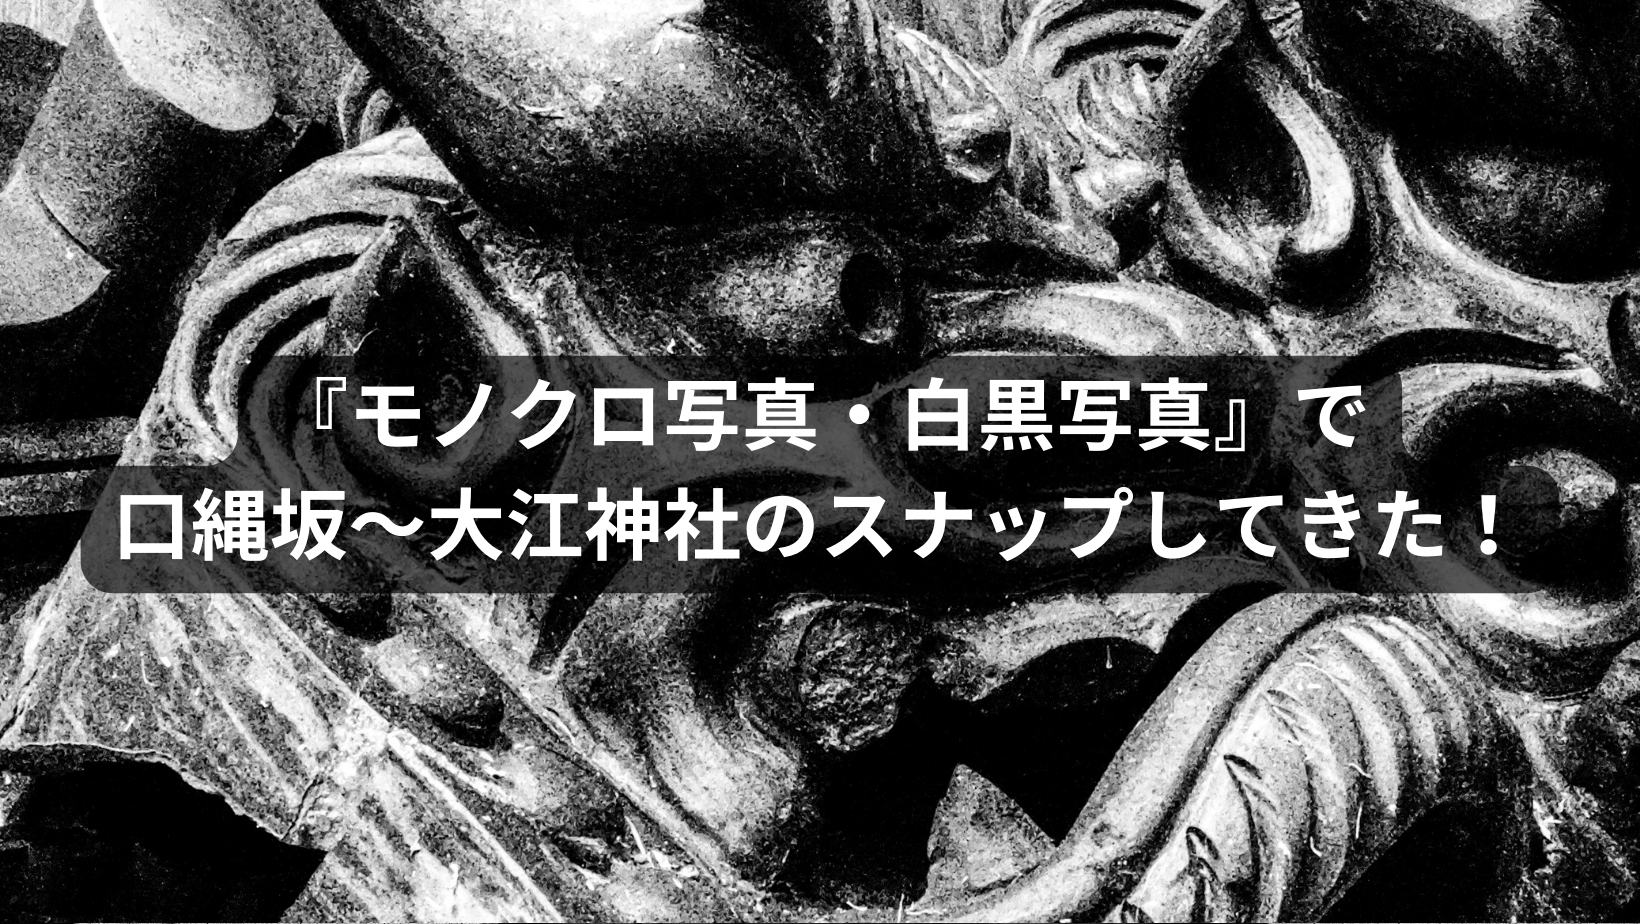 『モノクロ写真・白黒写真』で天王寺七坂の口縄坂〜大江神社のスナップをしてきた